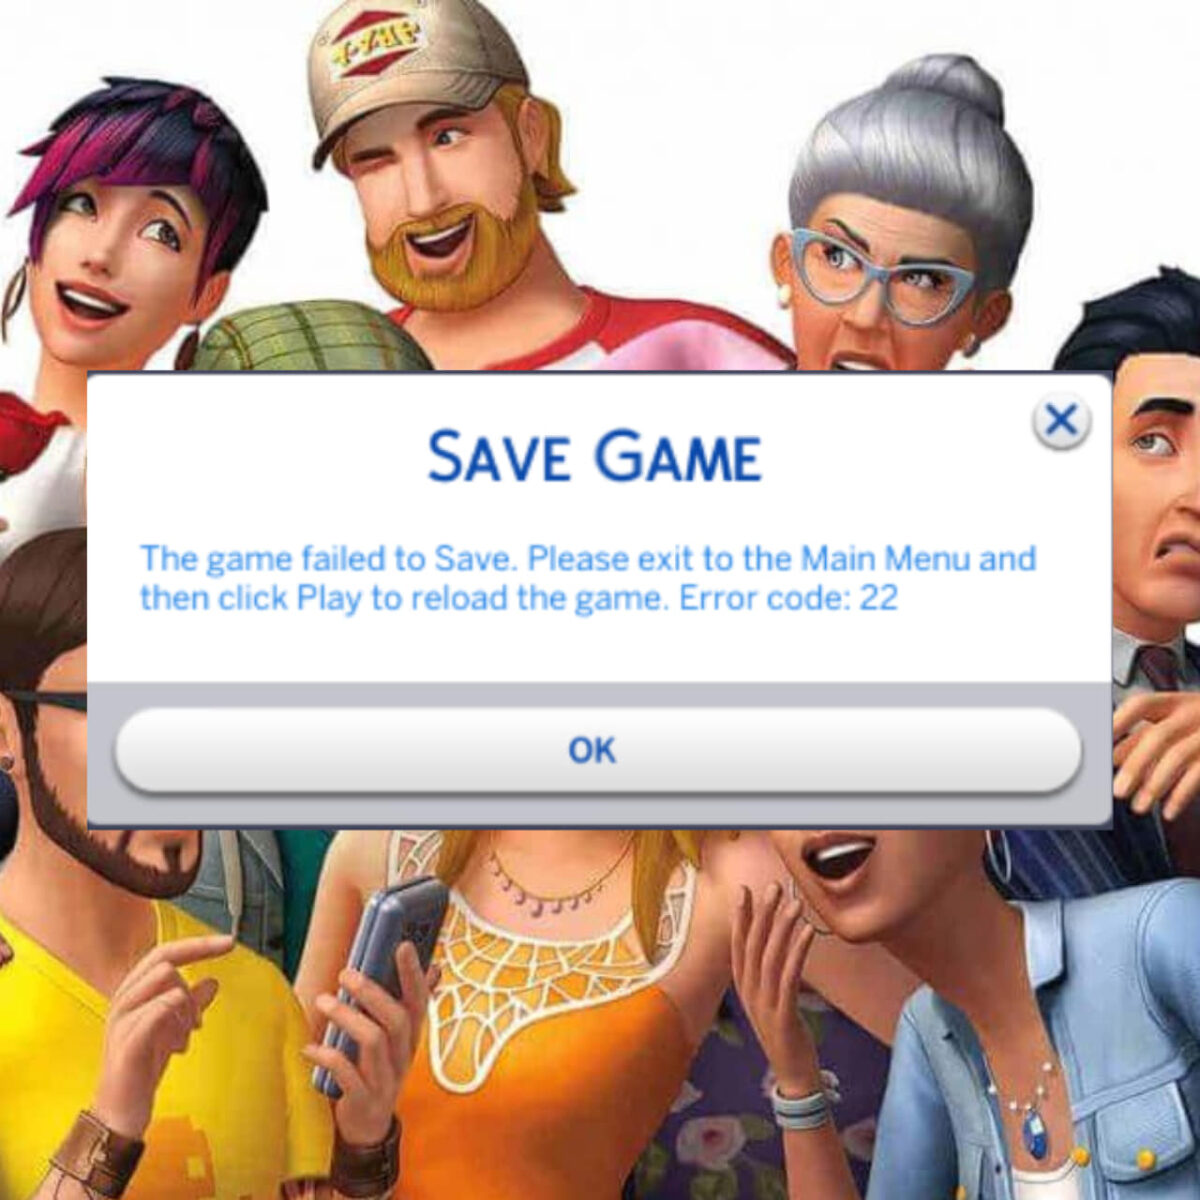 Hãy cùng thưởng thức những giây phút thoải mái với Sims